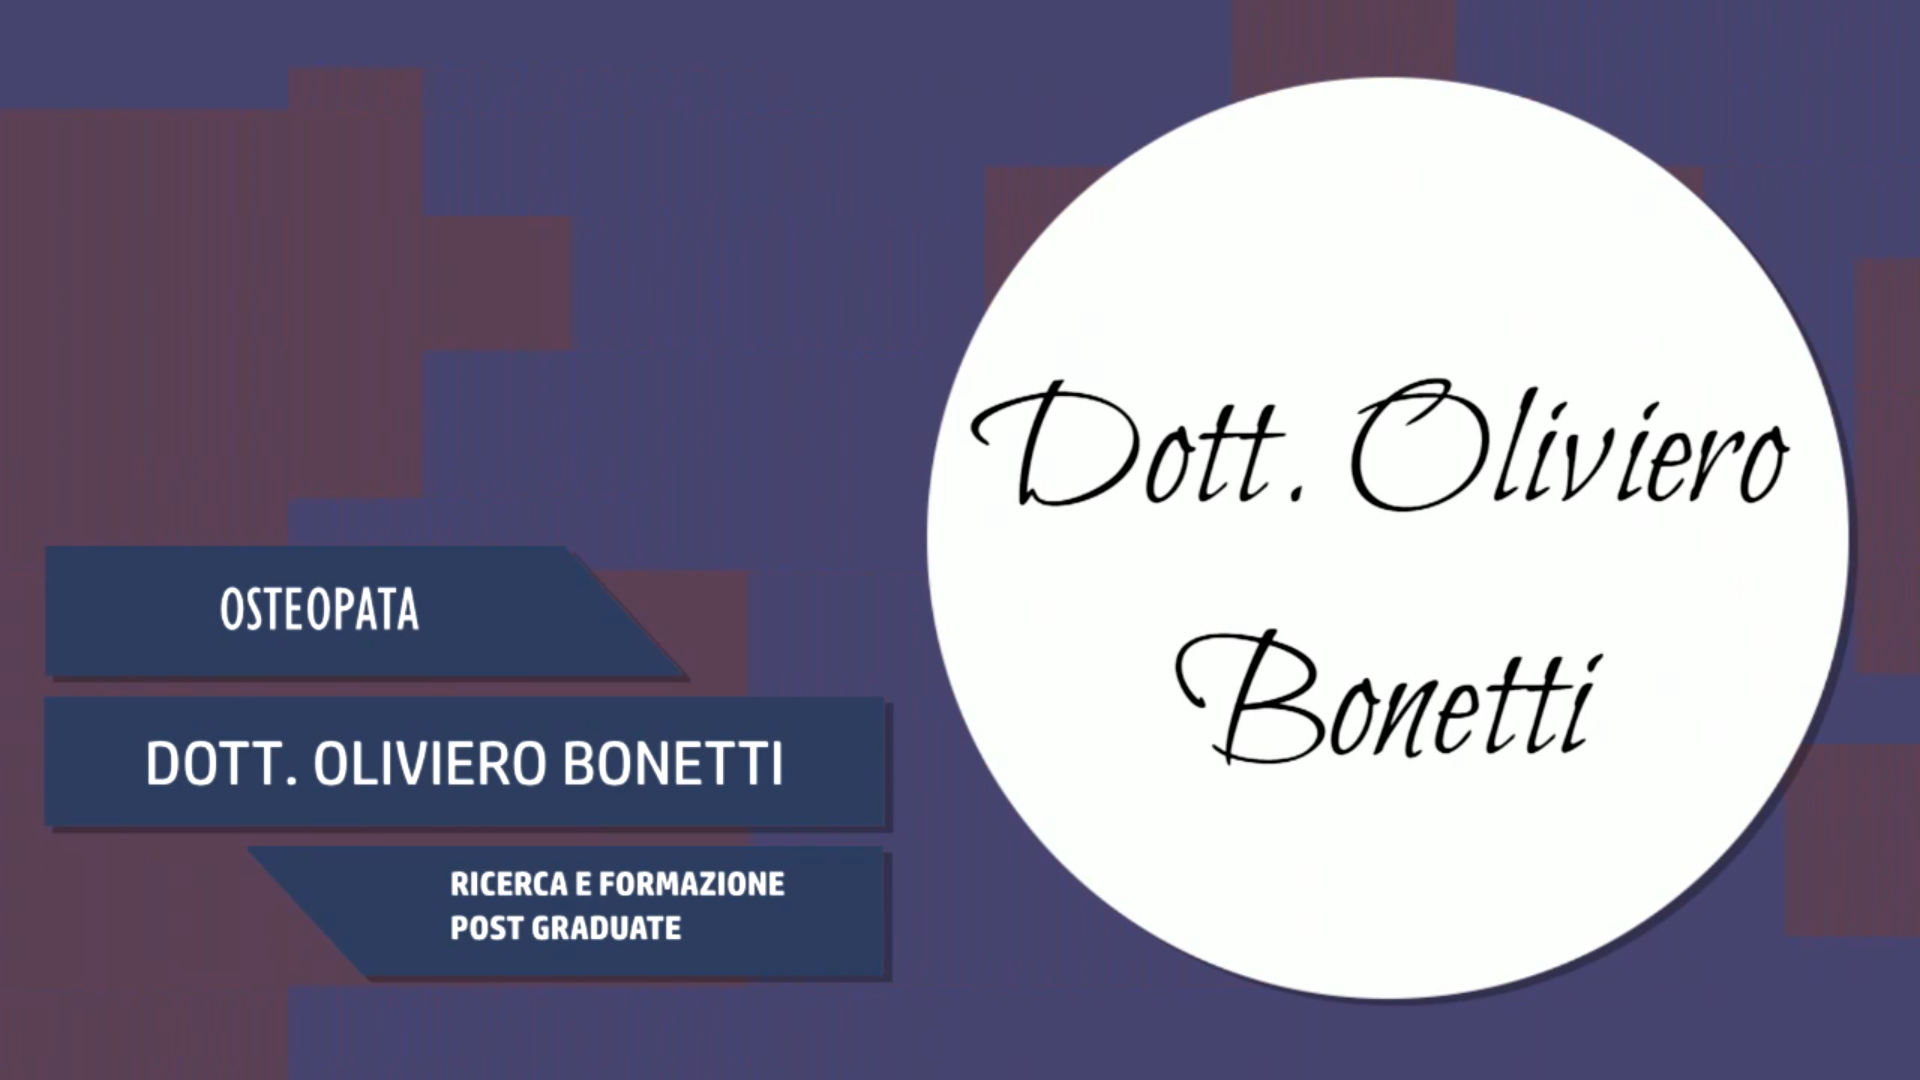 Intervista al Dott. Oliviero Bonetti – Ricerca e formazione post graduate